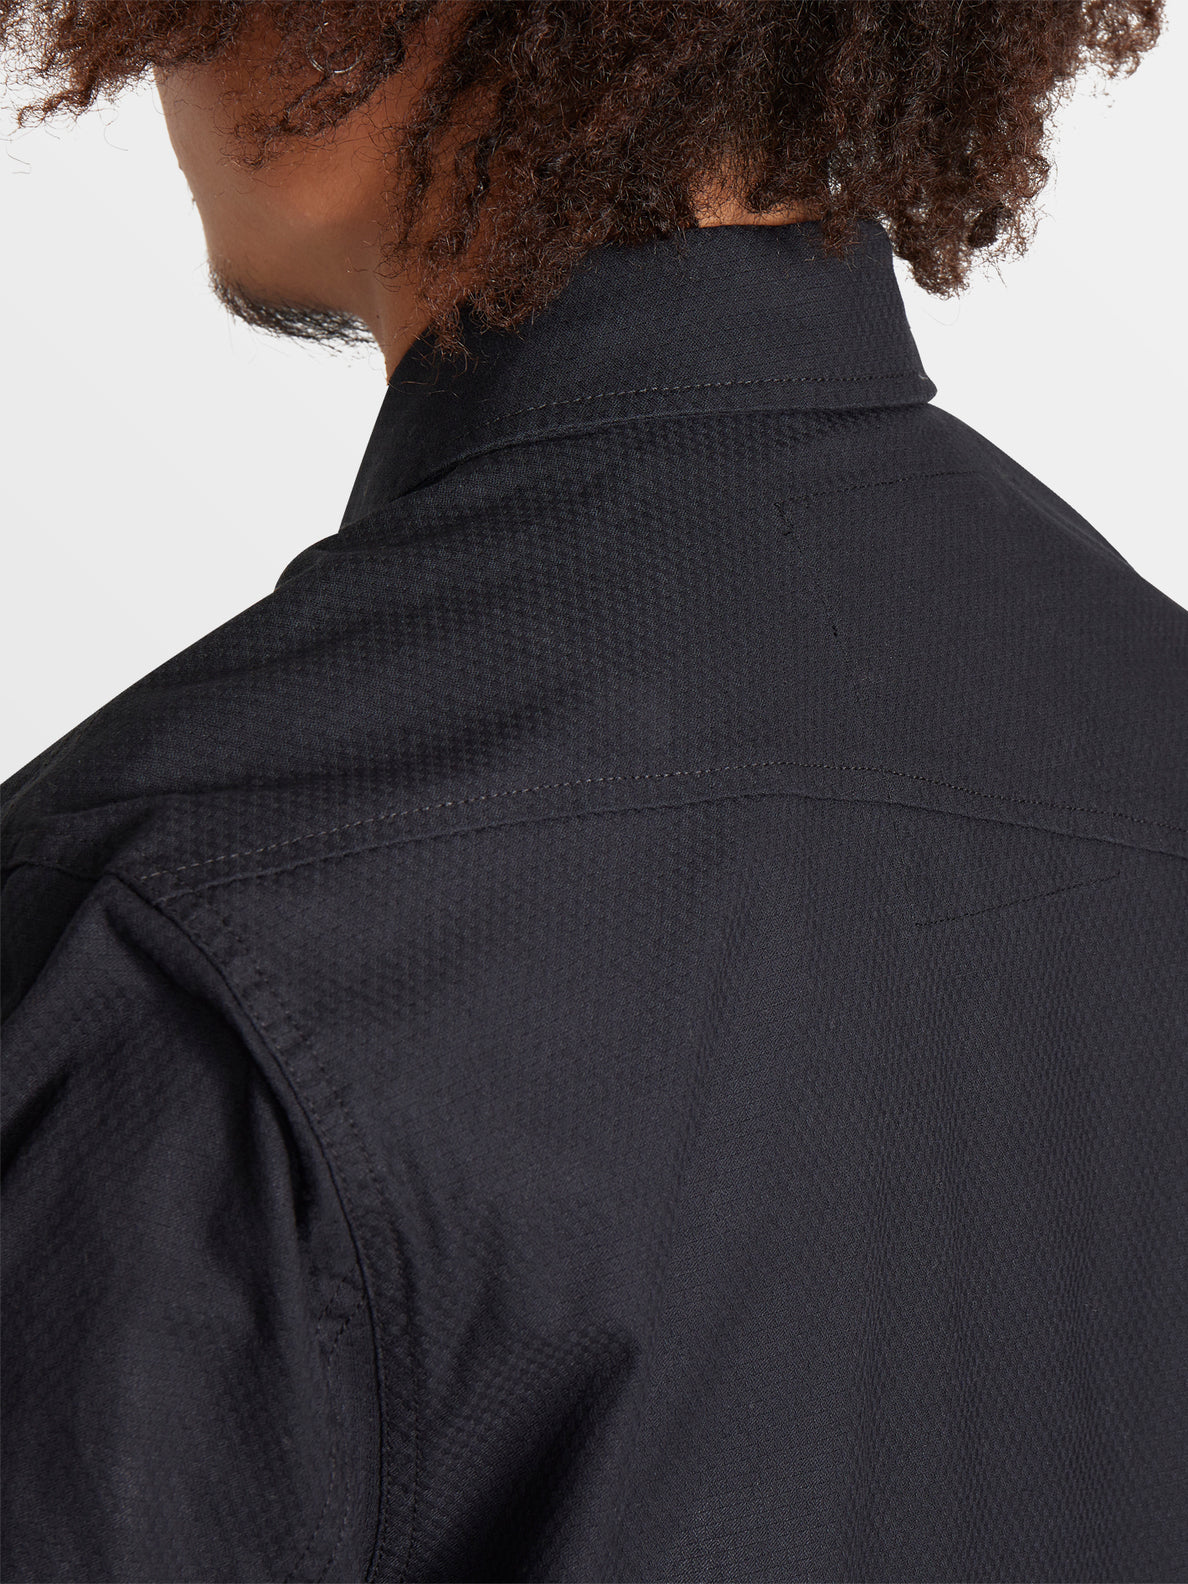 Tokyo True Shirt Jacket - Black – Volcom US